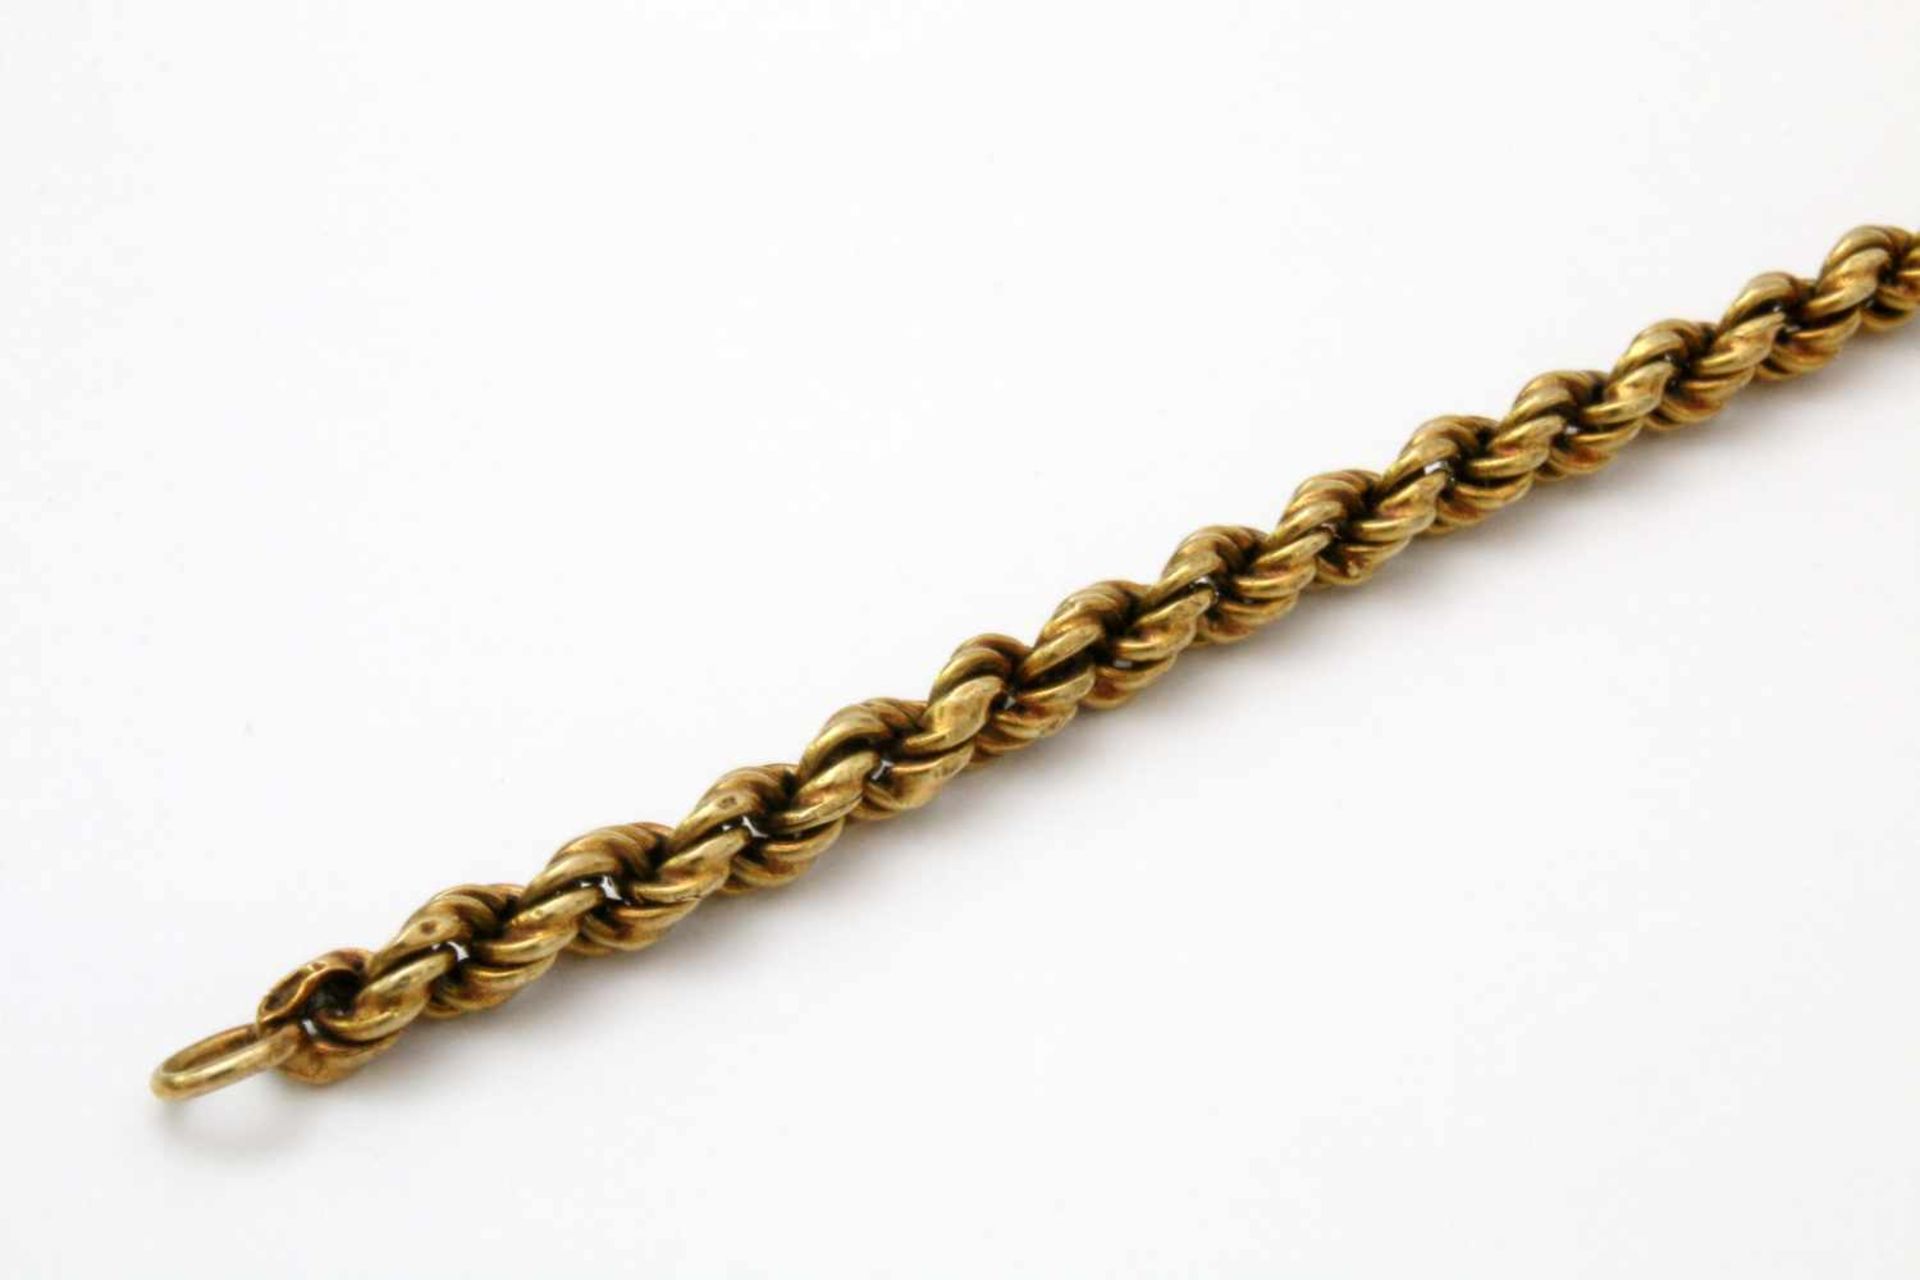 Gelbgold - Kordelarmband GG 585. Länge: 20 cm, Gewicht: 4,7 g. - Bild 2 aus 4